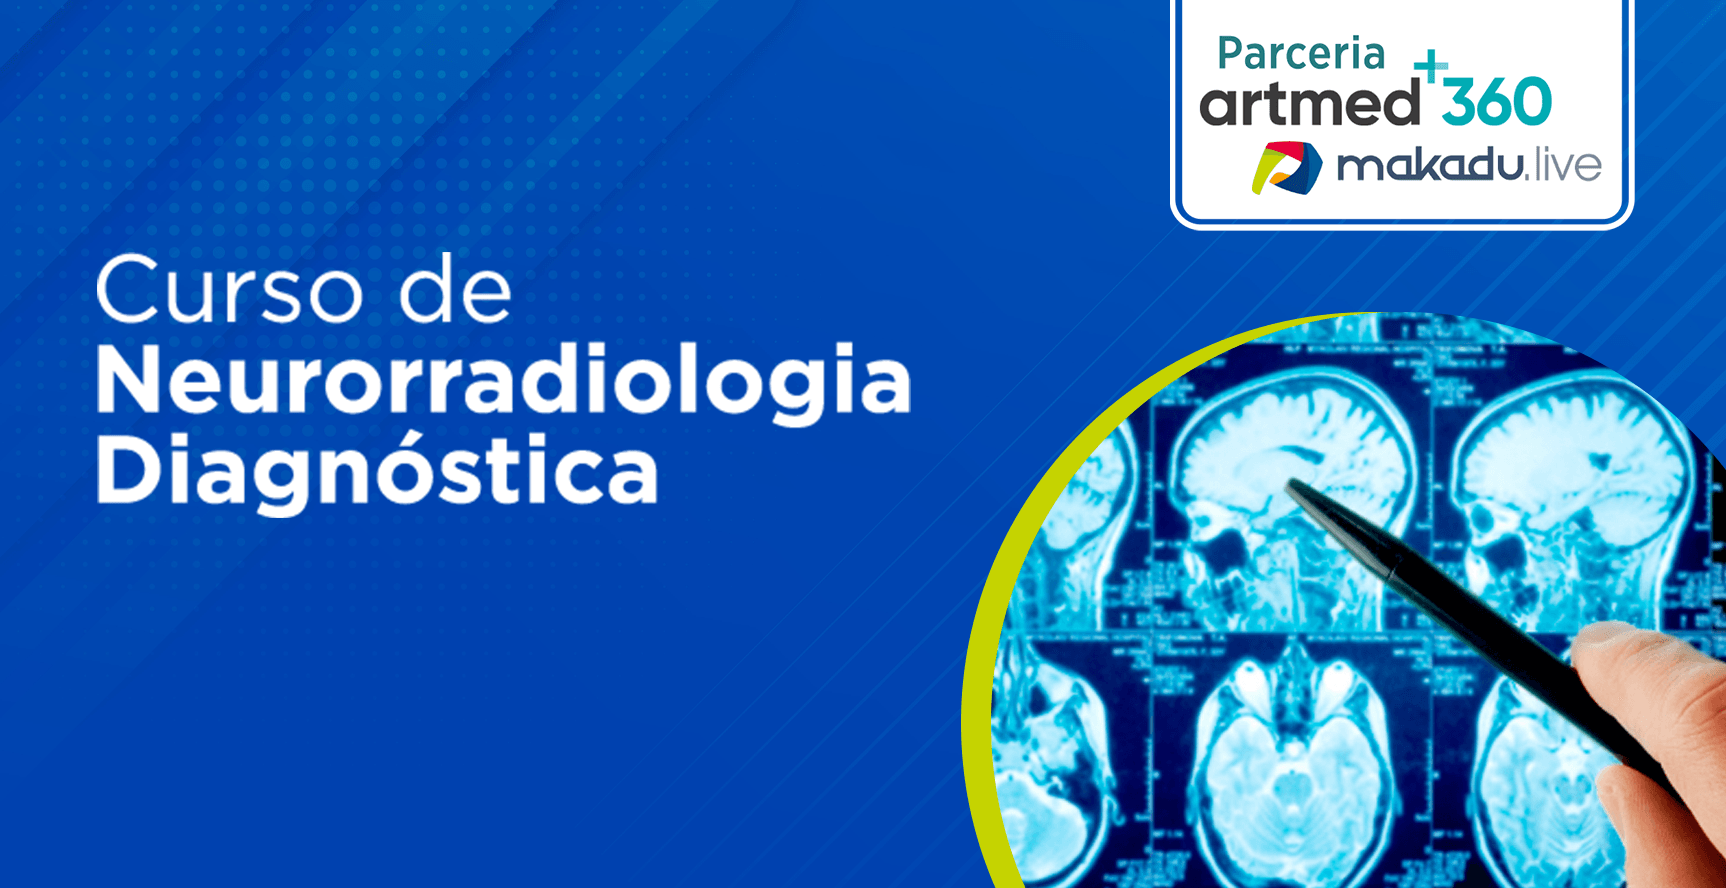 Artmed - Neurorradiologia Diagnóstica -Banner